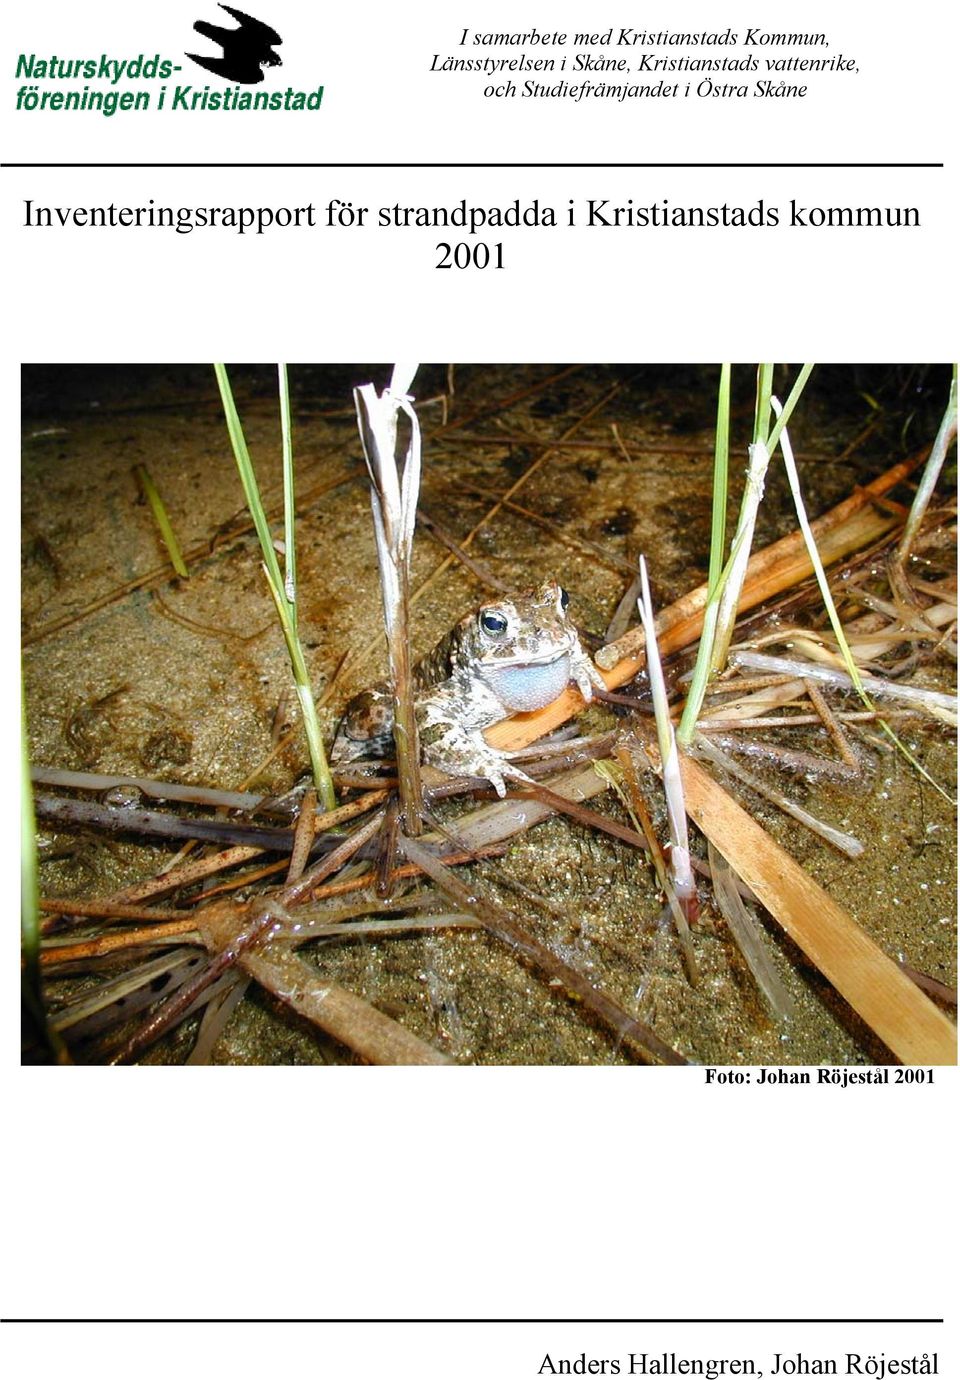 Inventeringsrapport för strandpadda i Kristianstads kommun